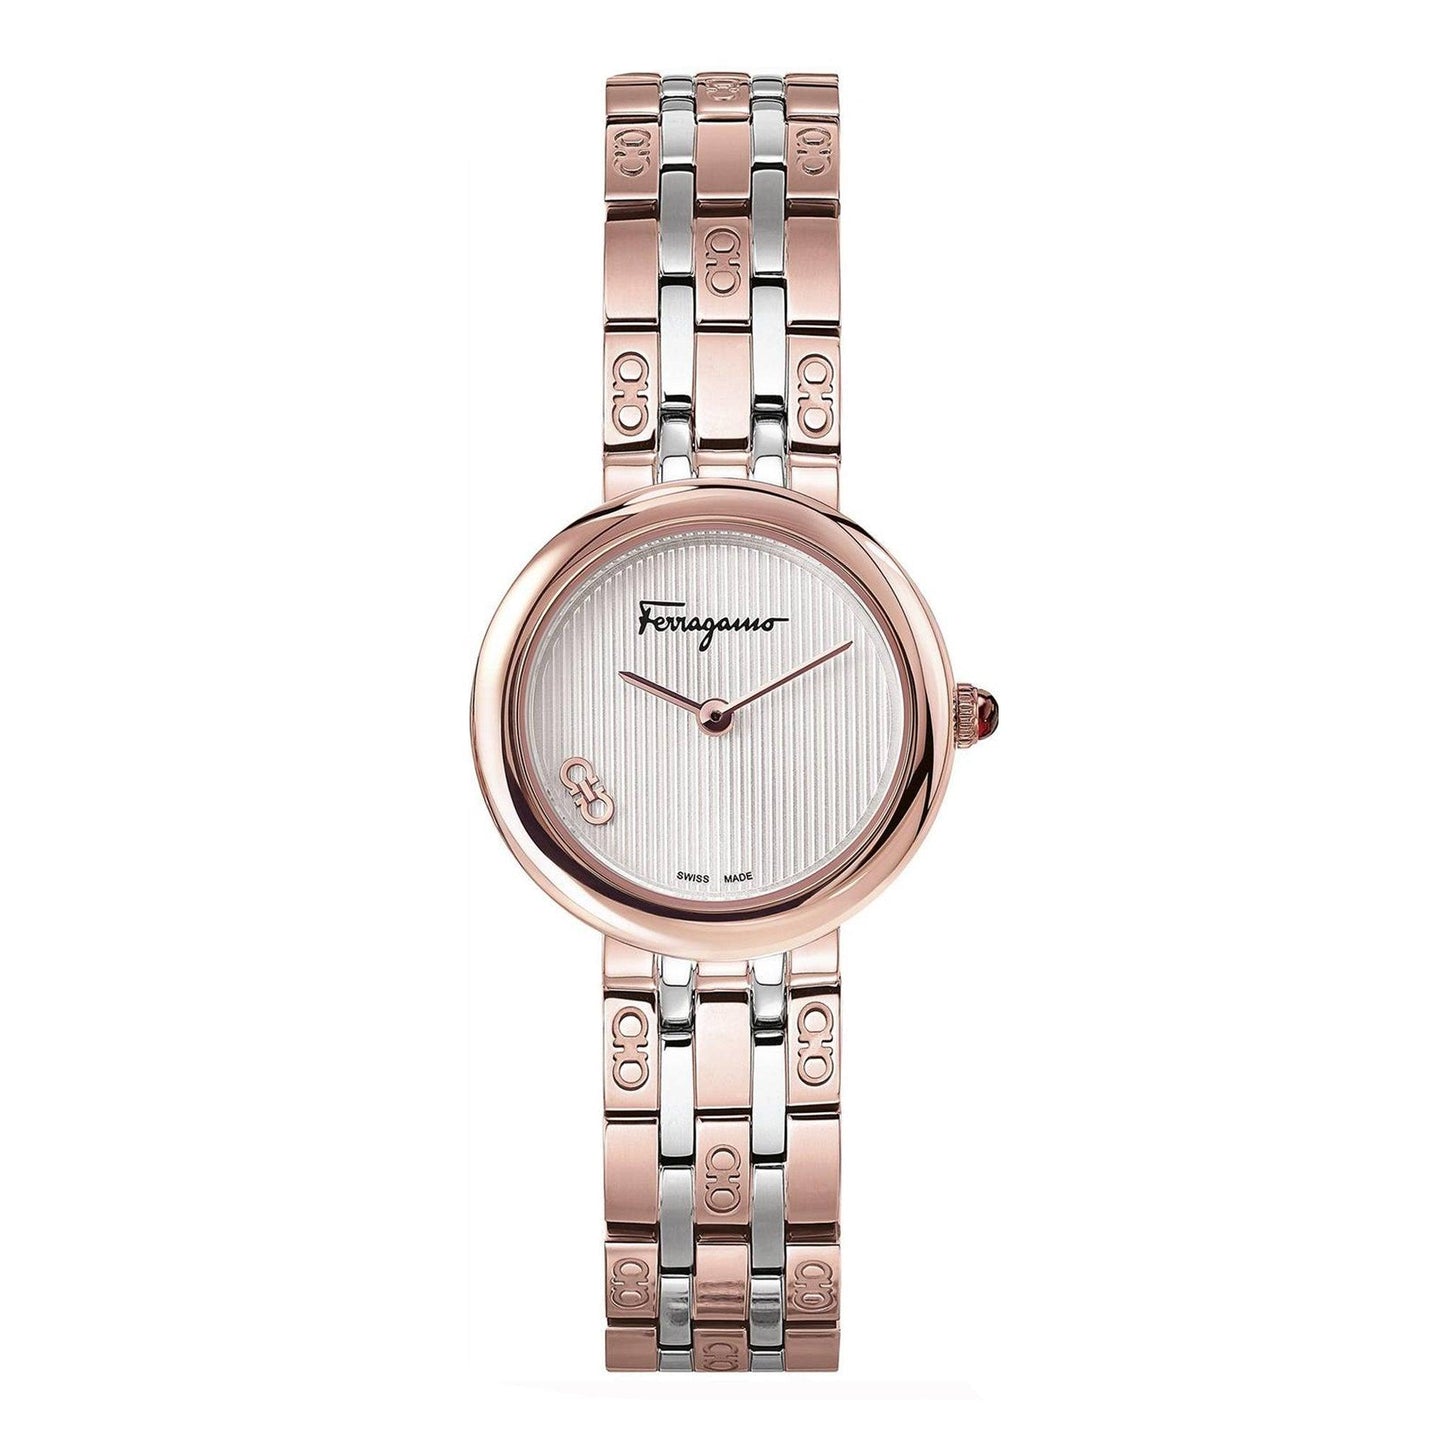 Salvatore Ferragamo Signature SFNL00620 orologio donna al quarzo - Kechiq Concept Boutique